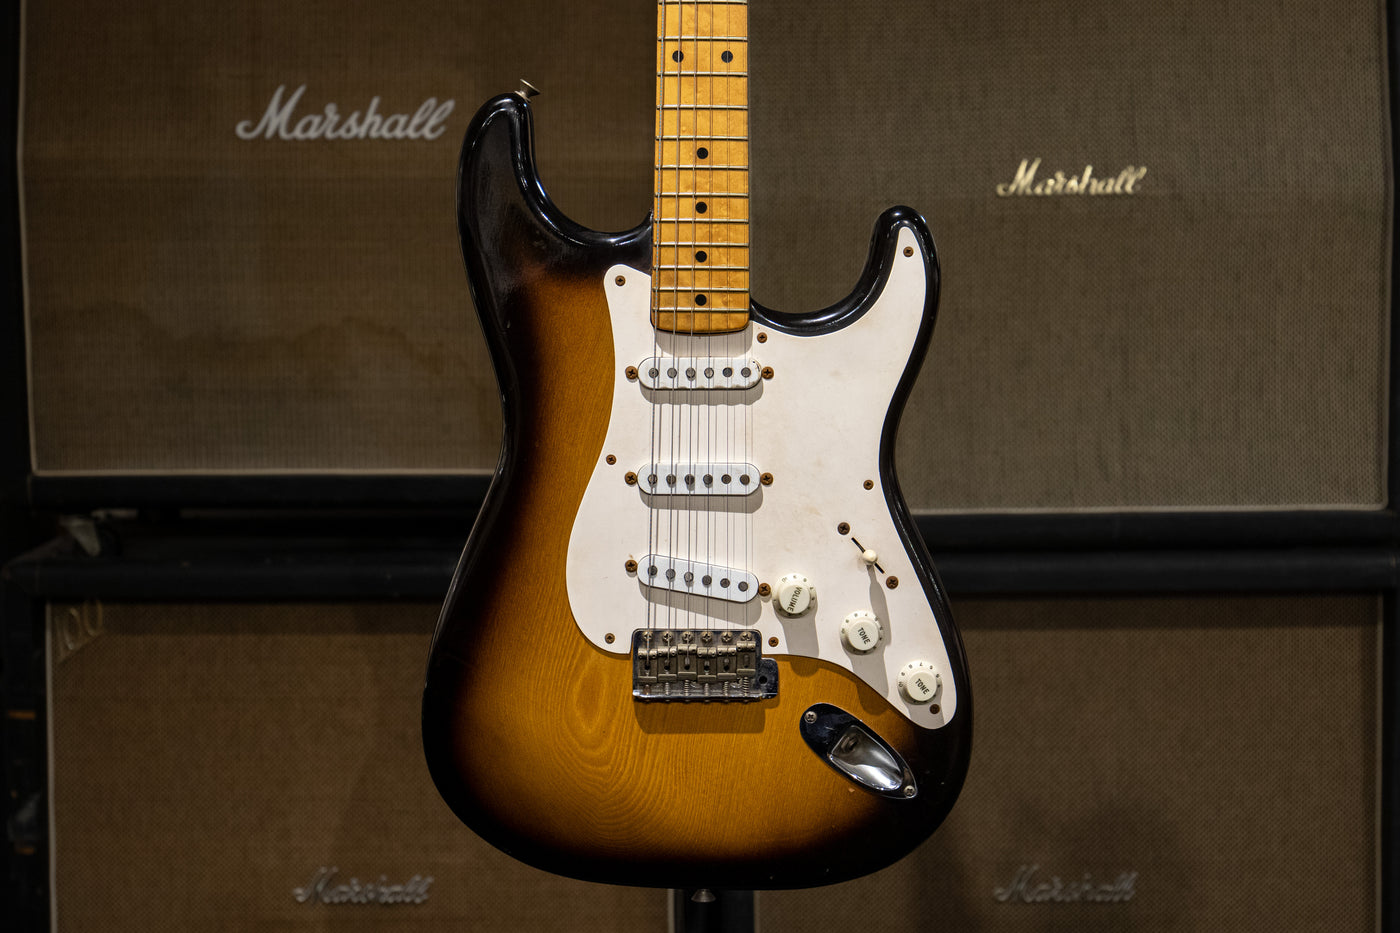 1954 Fender Stratocaster  - Sunburst